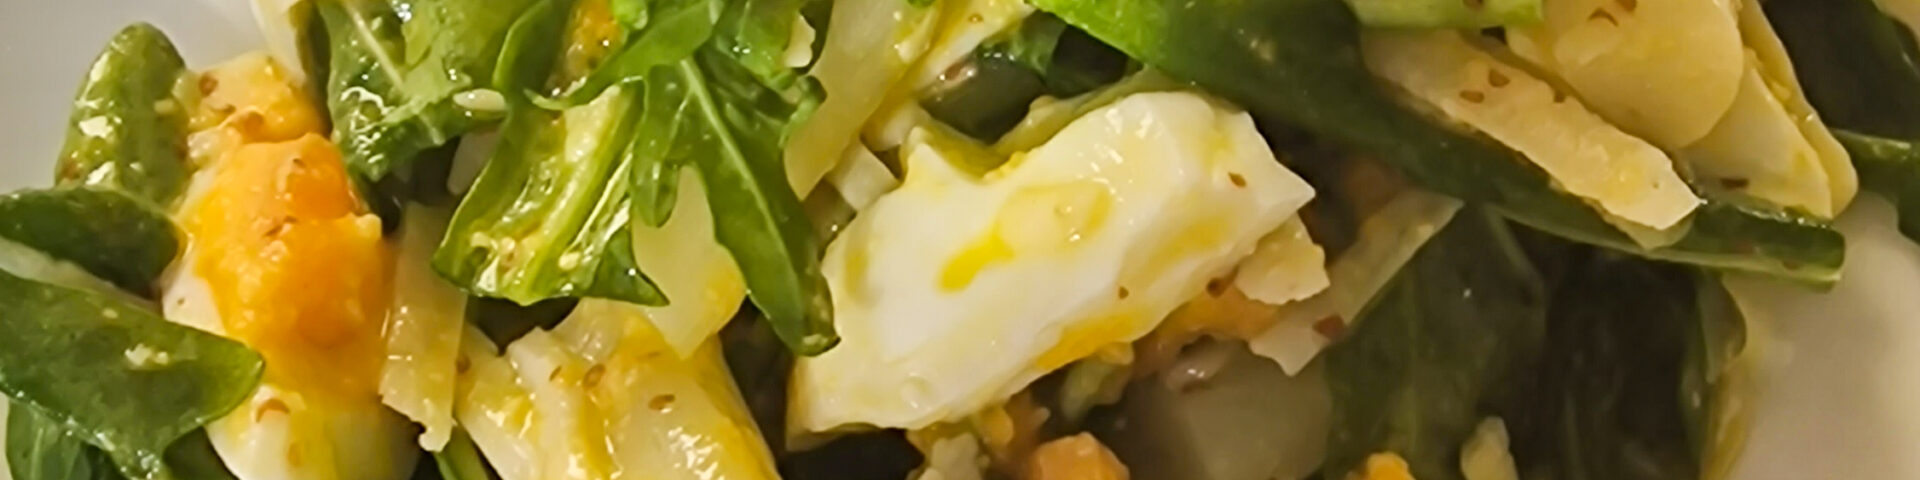 Spargelsalat mit Rucola und Parmesanraspeln